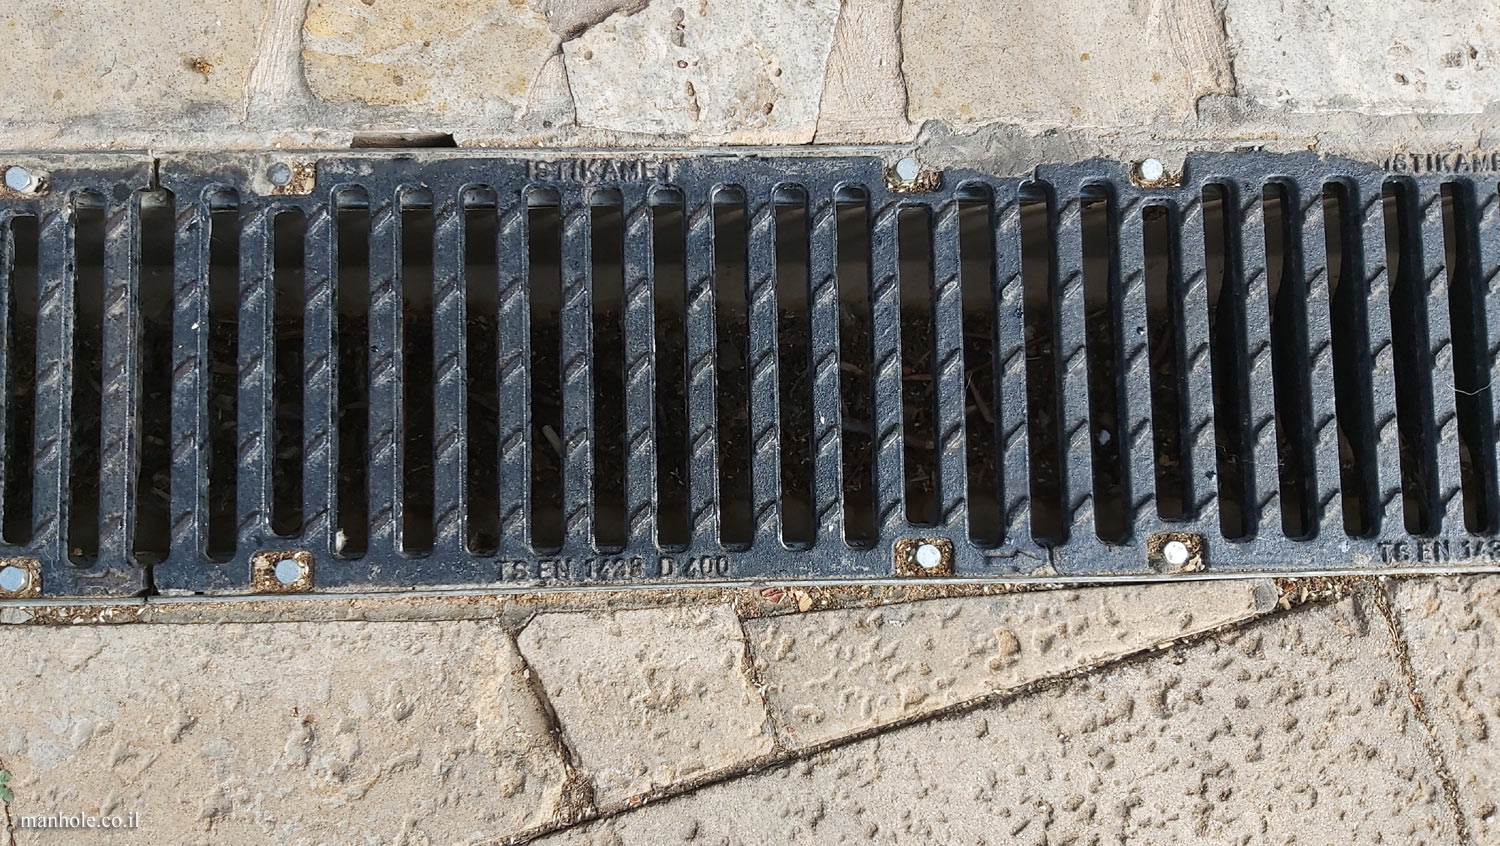 Tel Aviv - Pavement drainage - drainage strip